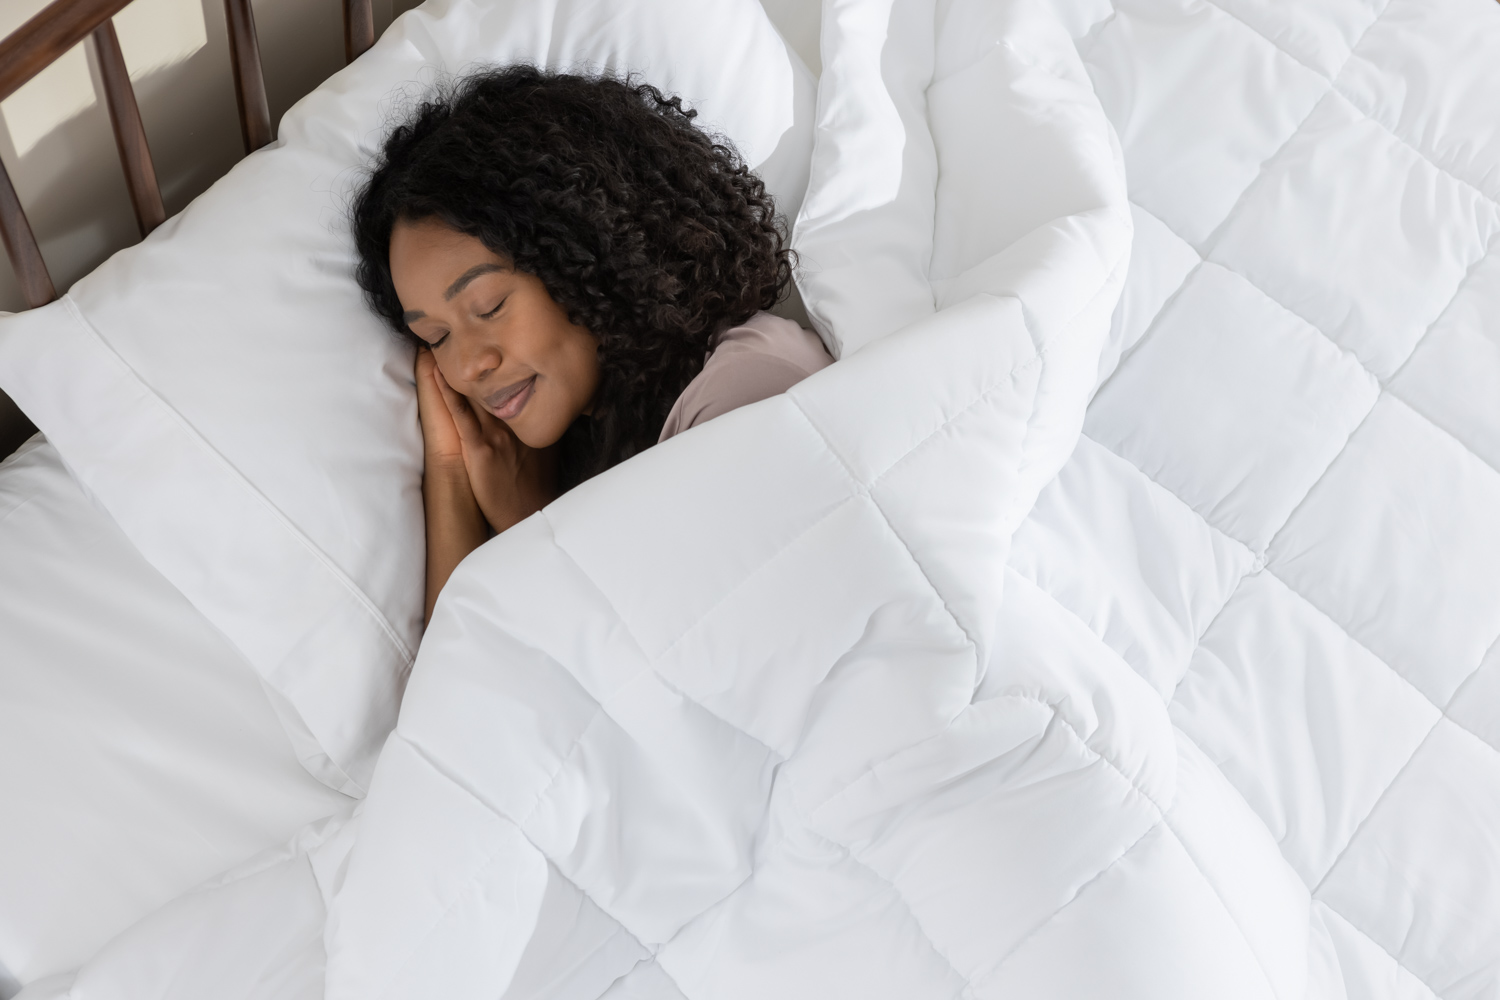  Une femme dort paisiblement sous sa couette en duvet synthétique 